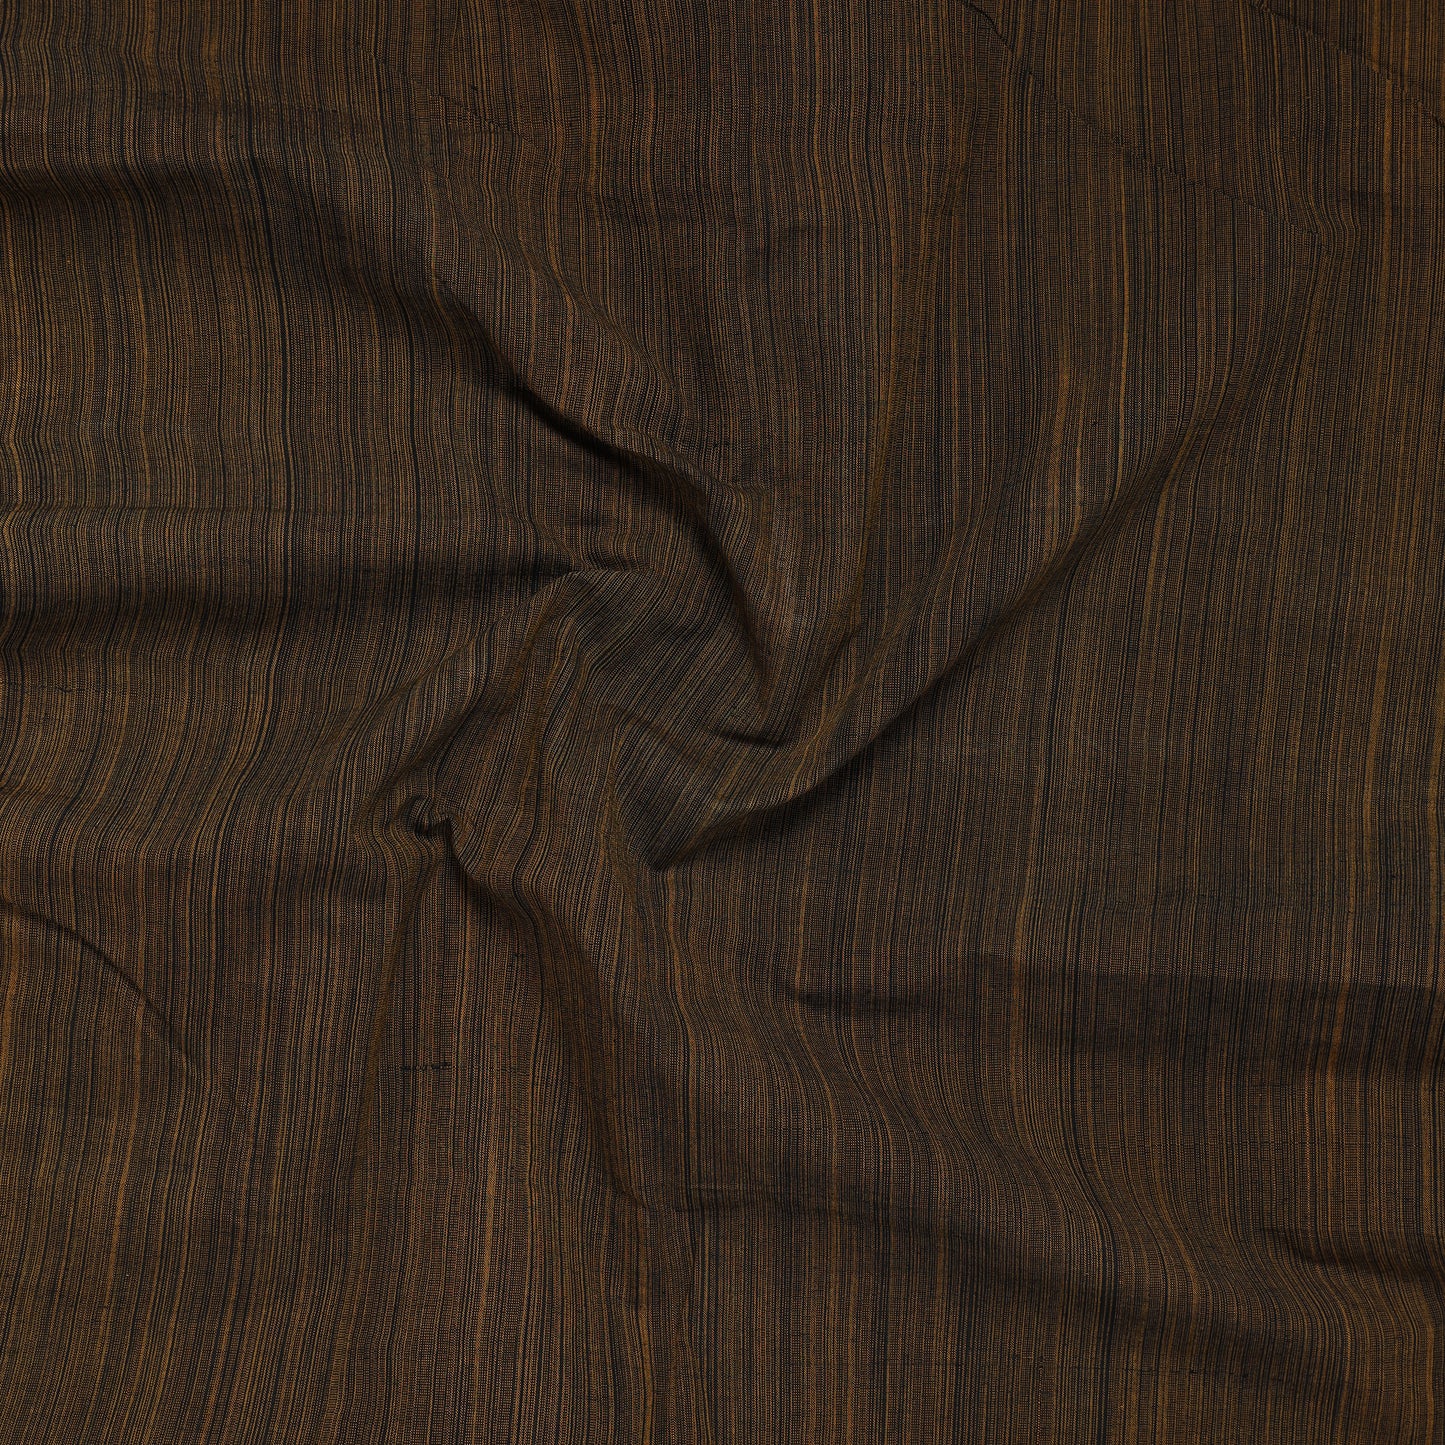 Mangalagiri Precut Fabric